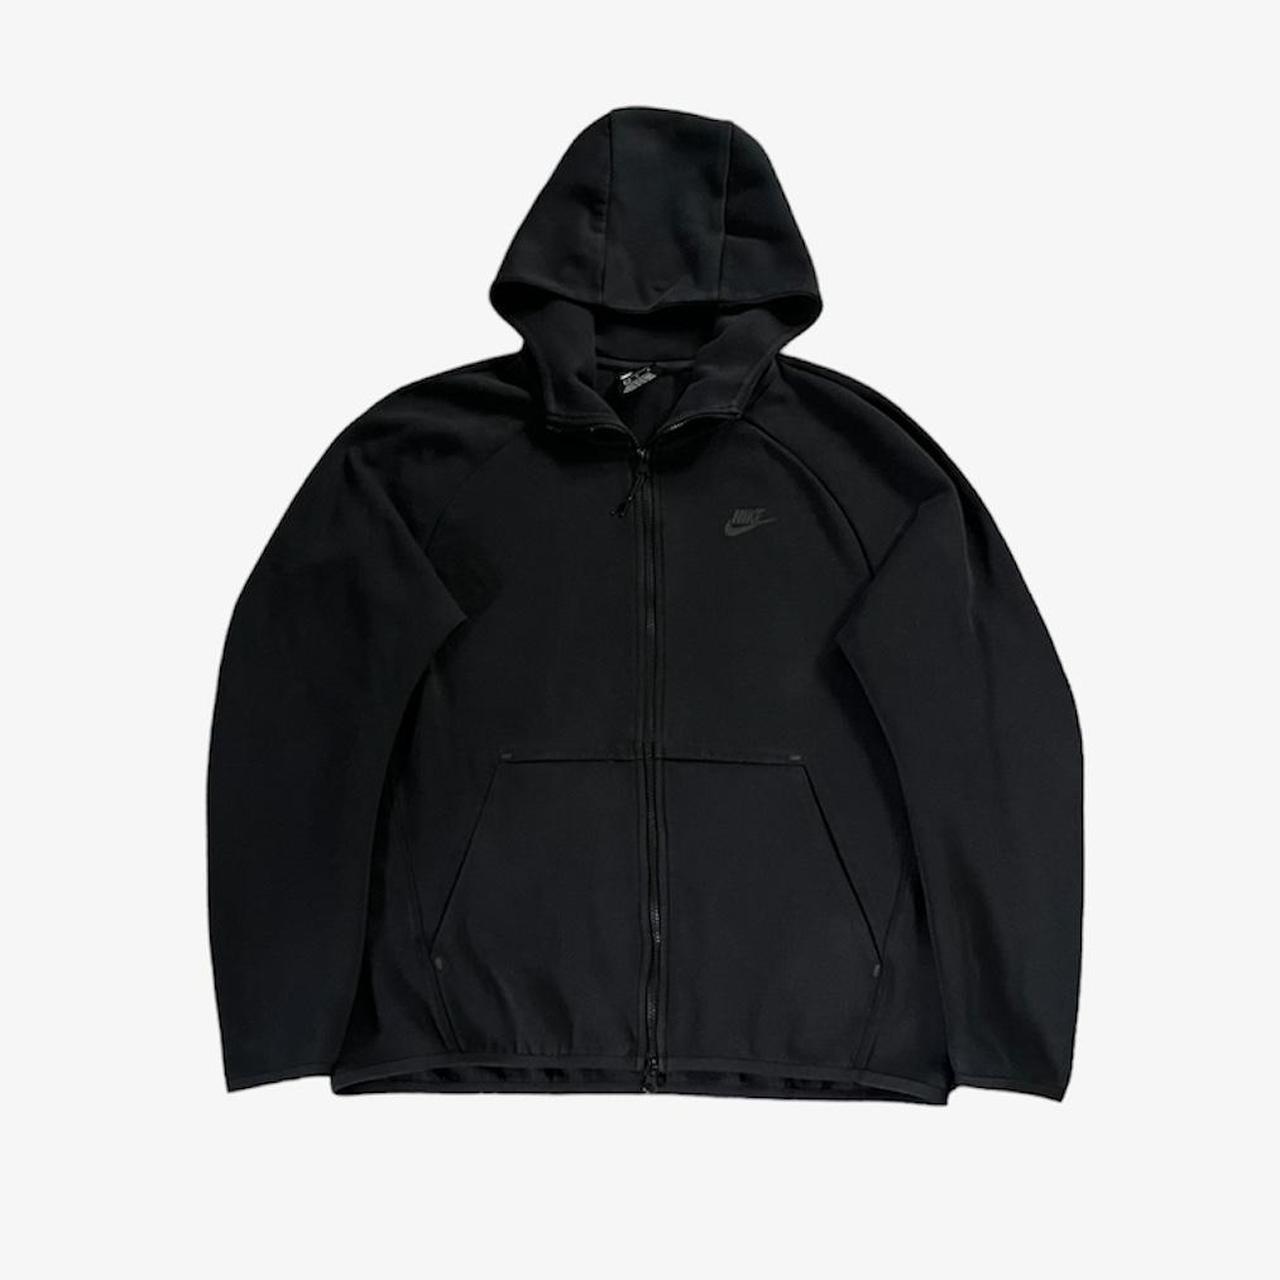 Old season Nike tech fleece black hoodie Mens size... - Depop